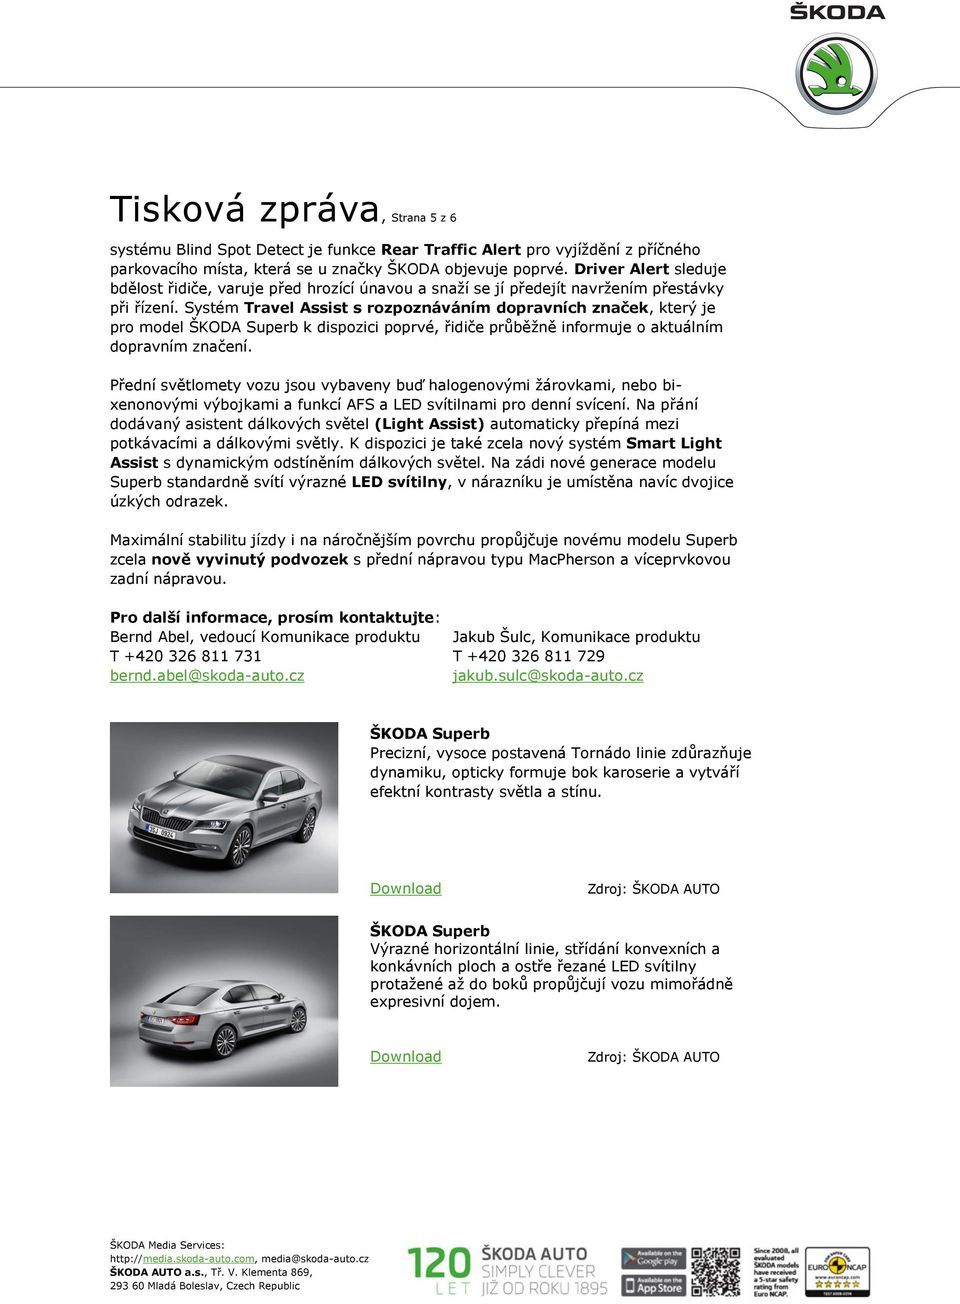 Systém Travel Assist s rozpoznáváním dopravních značek, který je pro model ŠKODA Superb k dispozici poprvé, řidiče průběžně informuje o aktuálním dopravním značení.